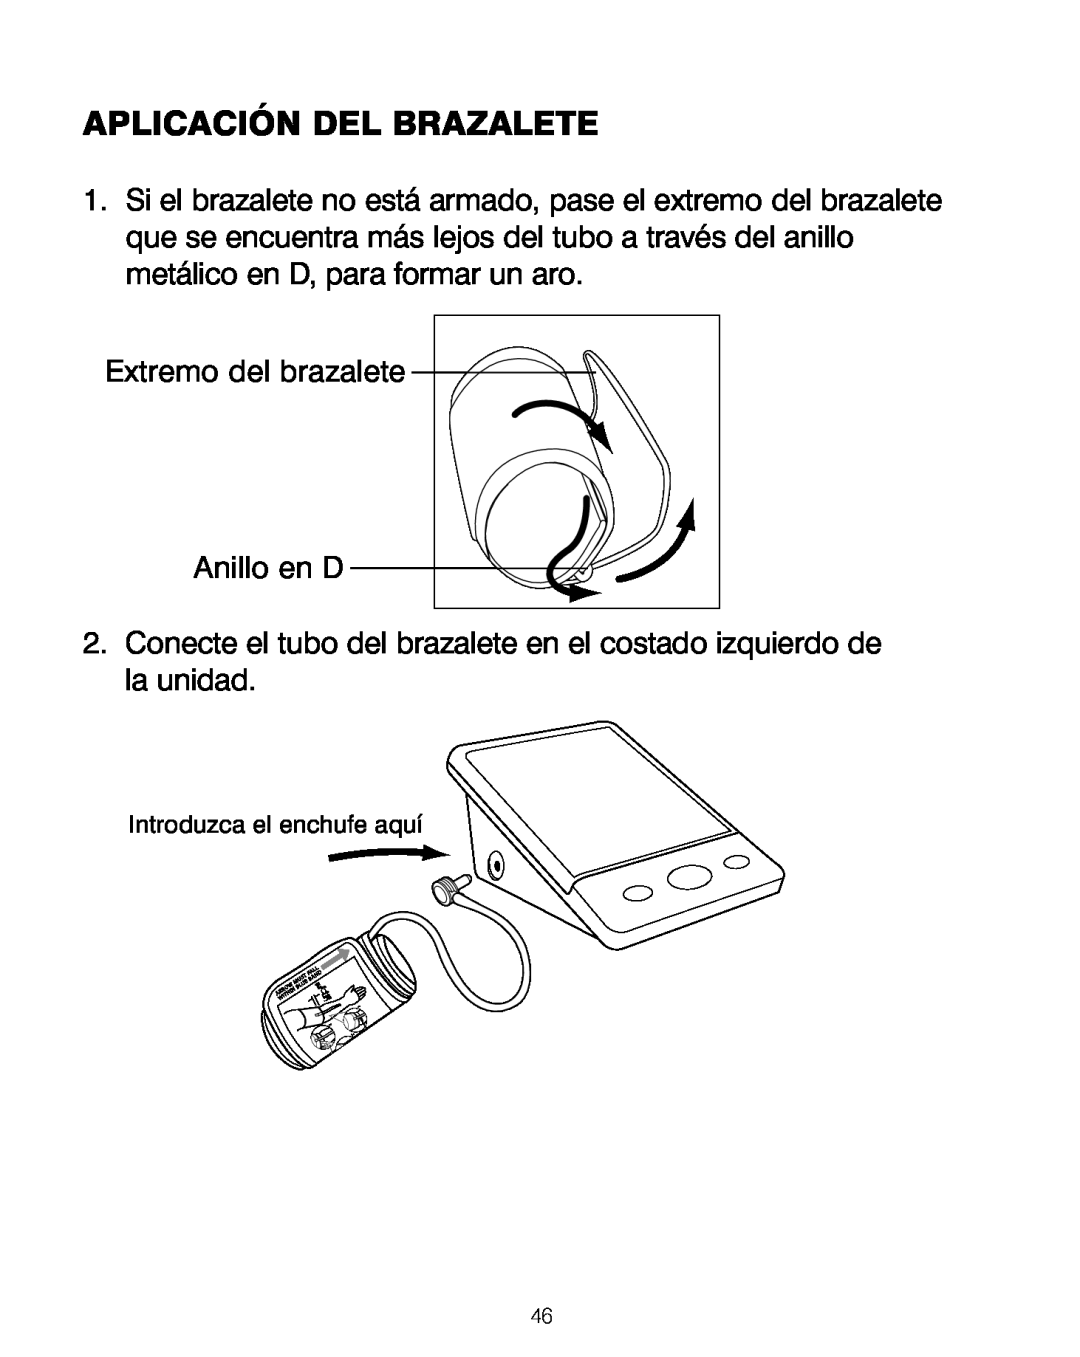 HoMedics BPA-200 manual Aplicación Del Brazalete, Extremo del brazalete, Anillo en D 